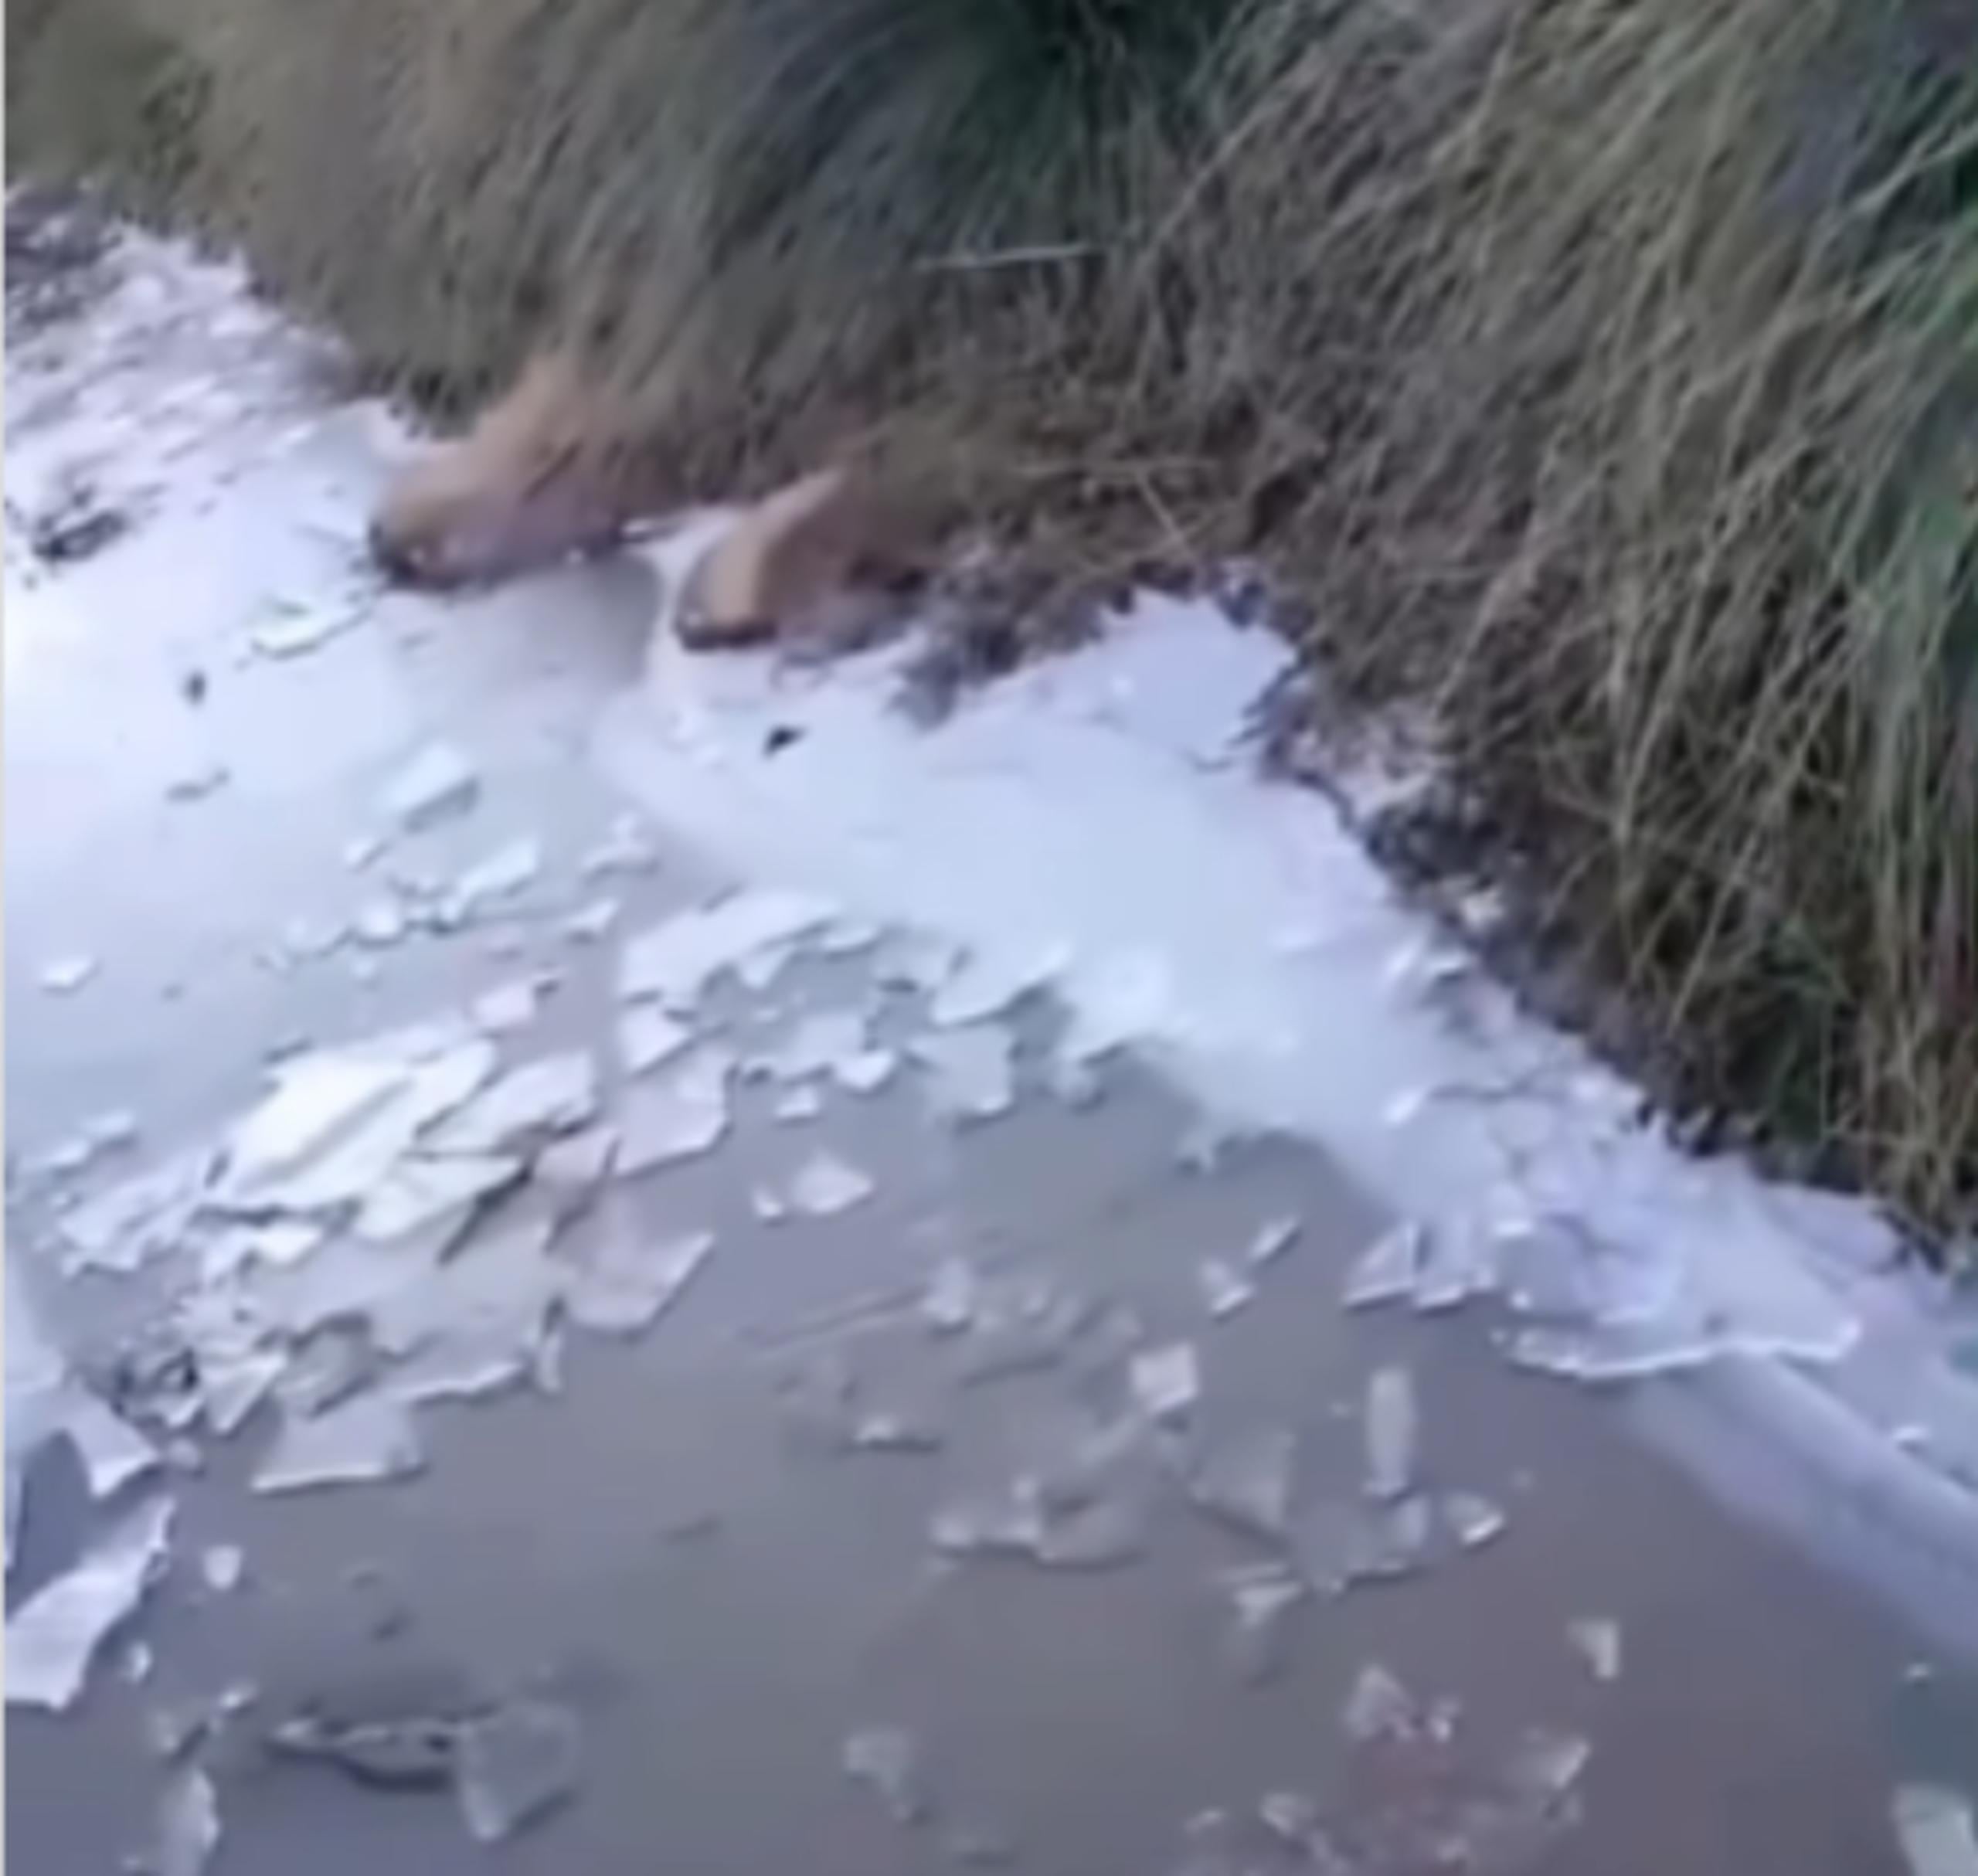 Las imágenes del arroyo congelado se volvieron virales en el fin de semana.